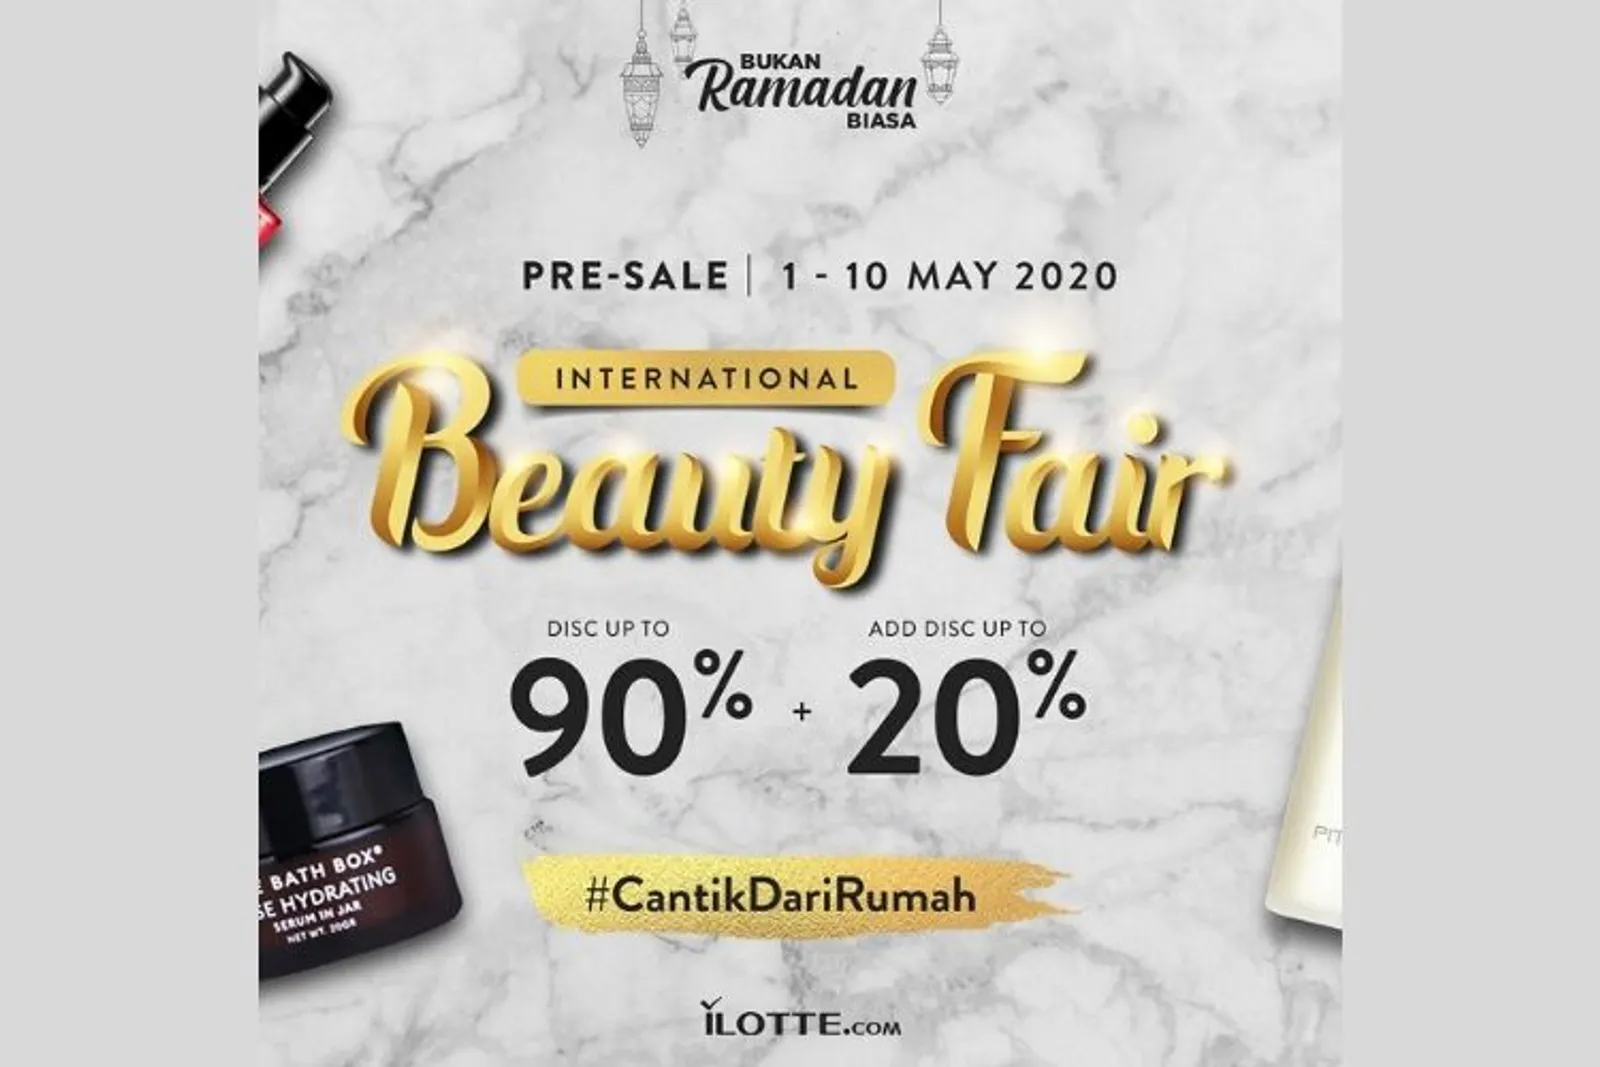 International Beauty Fair, Hadirkan Ragam Produk dengan Promo Menarik